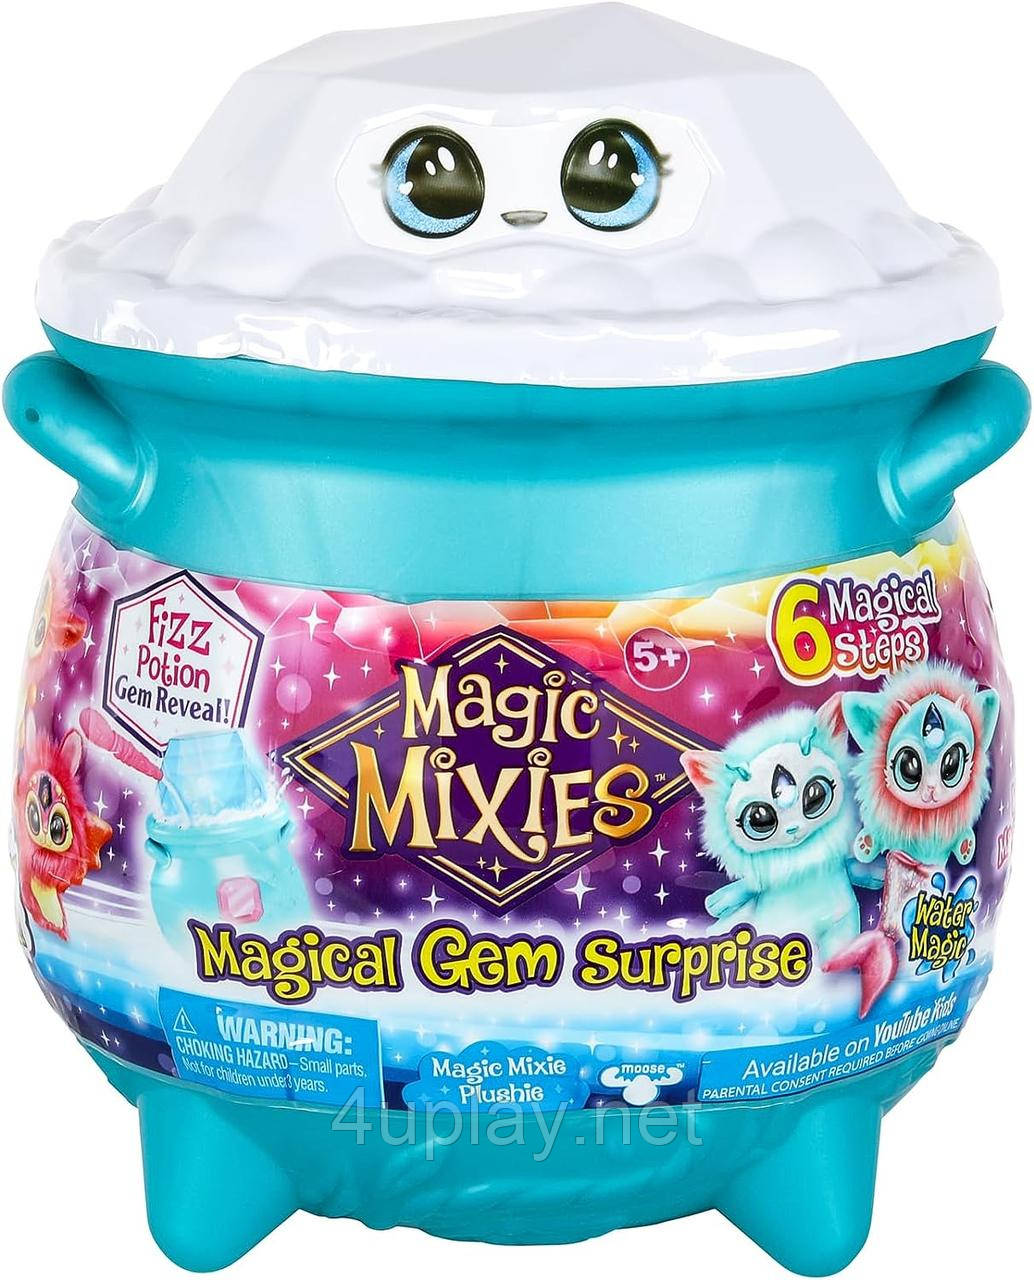 Чарівний котел Меджік Міксіс магічний кристал Магія ВОДИ Magic Mixies Magical Gem Surprise Water Magic Cauldron